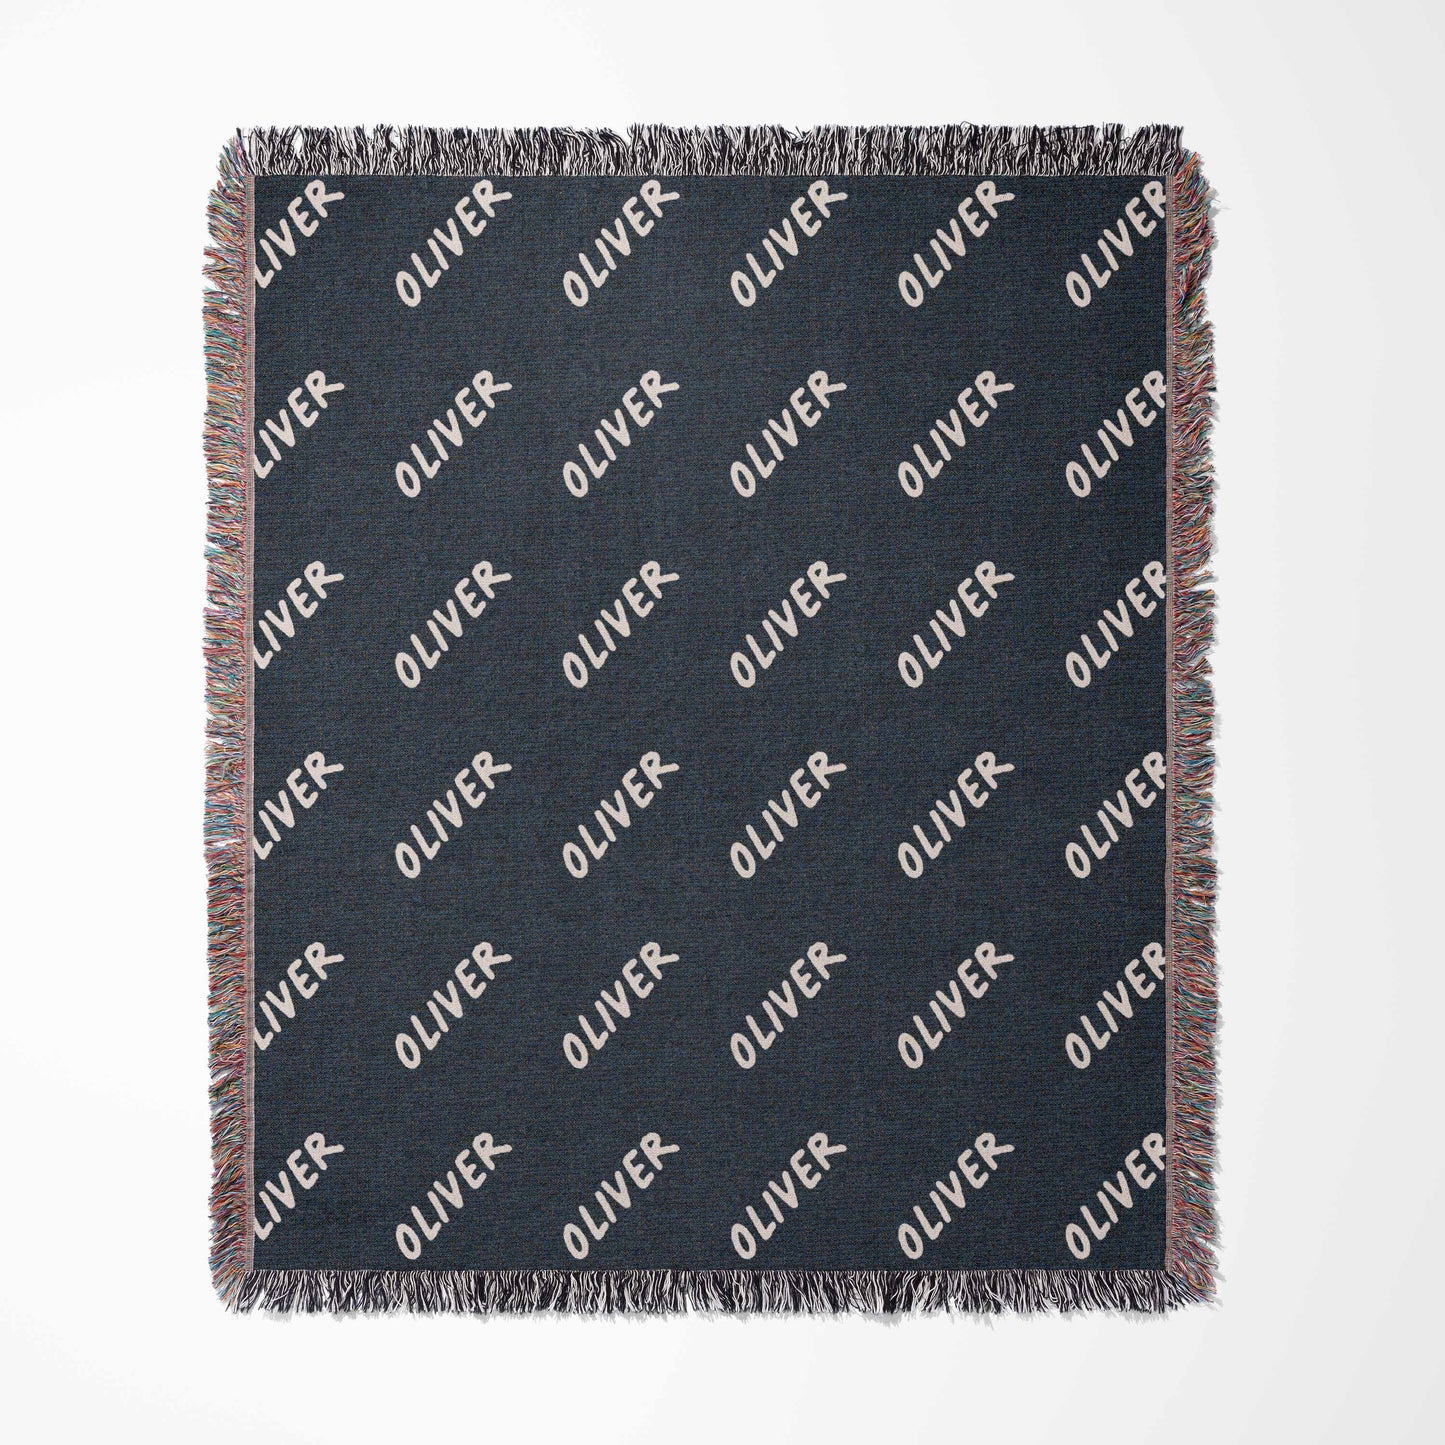 Custom Name Woven Blanket